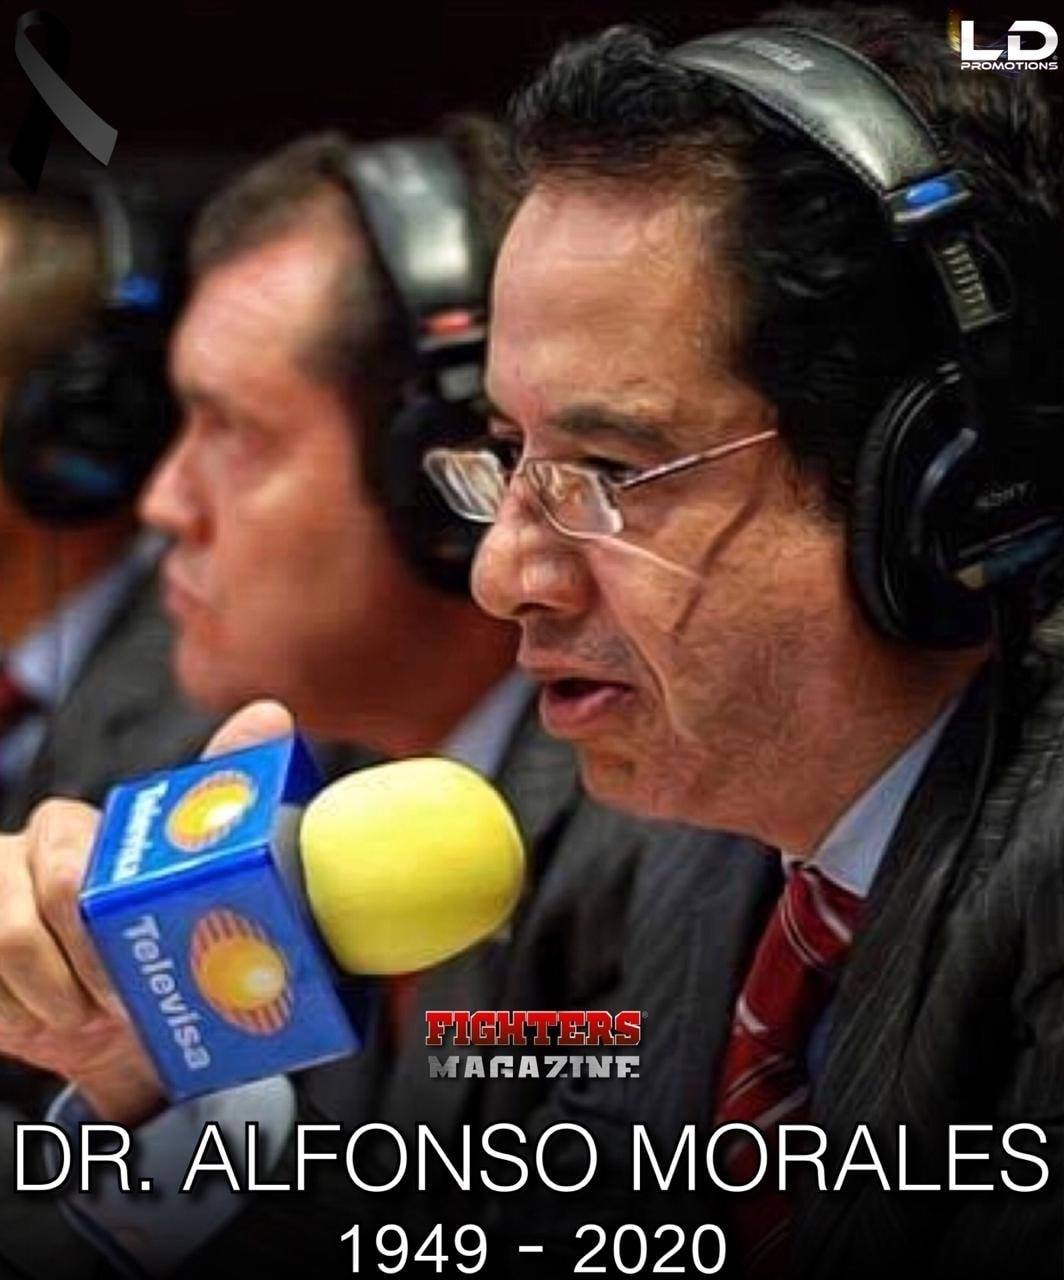 Lamentables noticias. A la edad de 71 años, muere el cronista deportivo y por mucho tiempo la voz del Boxeo y Lucha Libre, el Doctor Alfonso Morales.